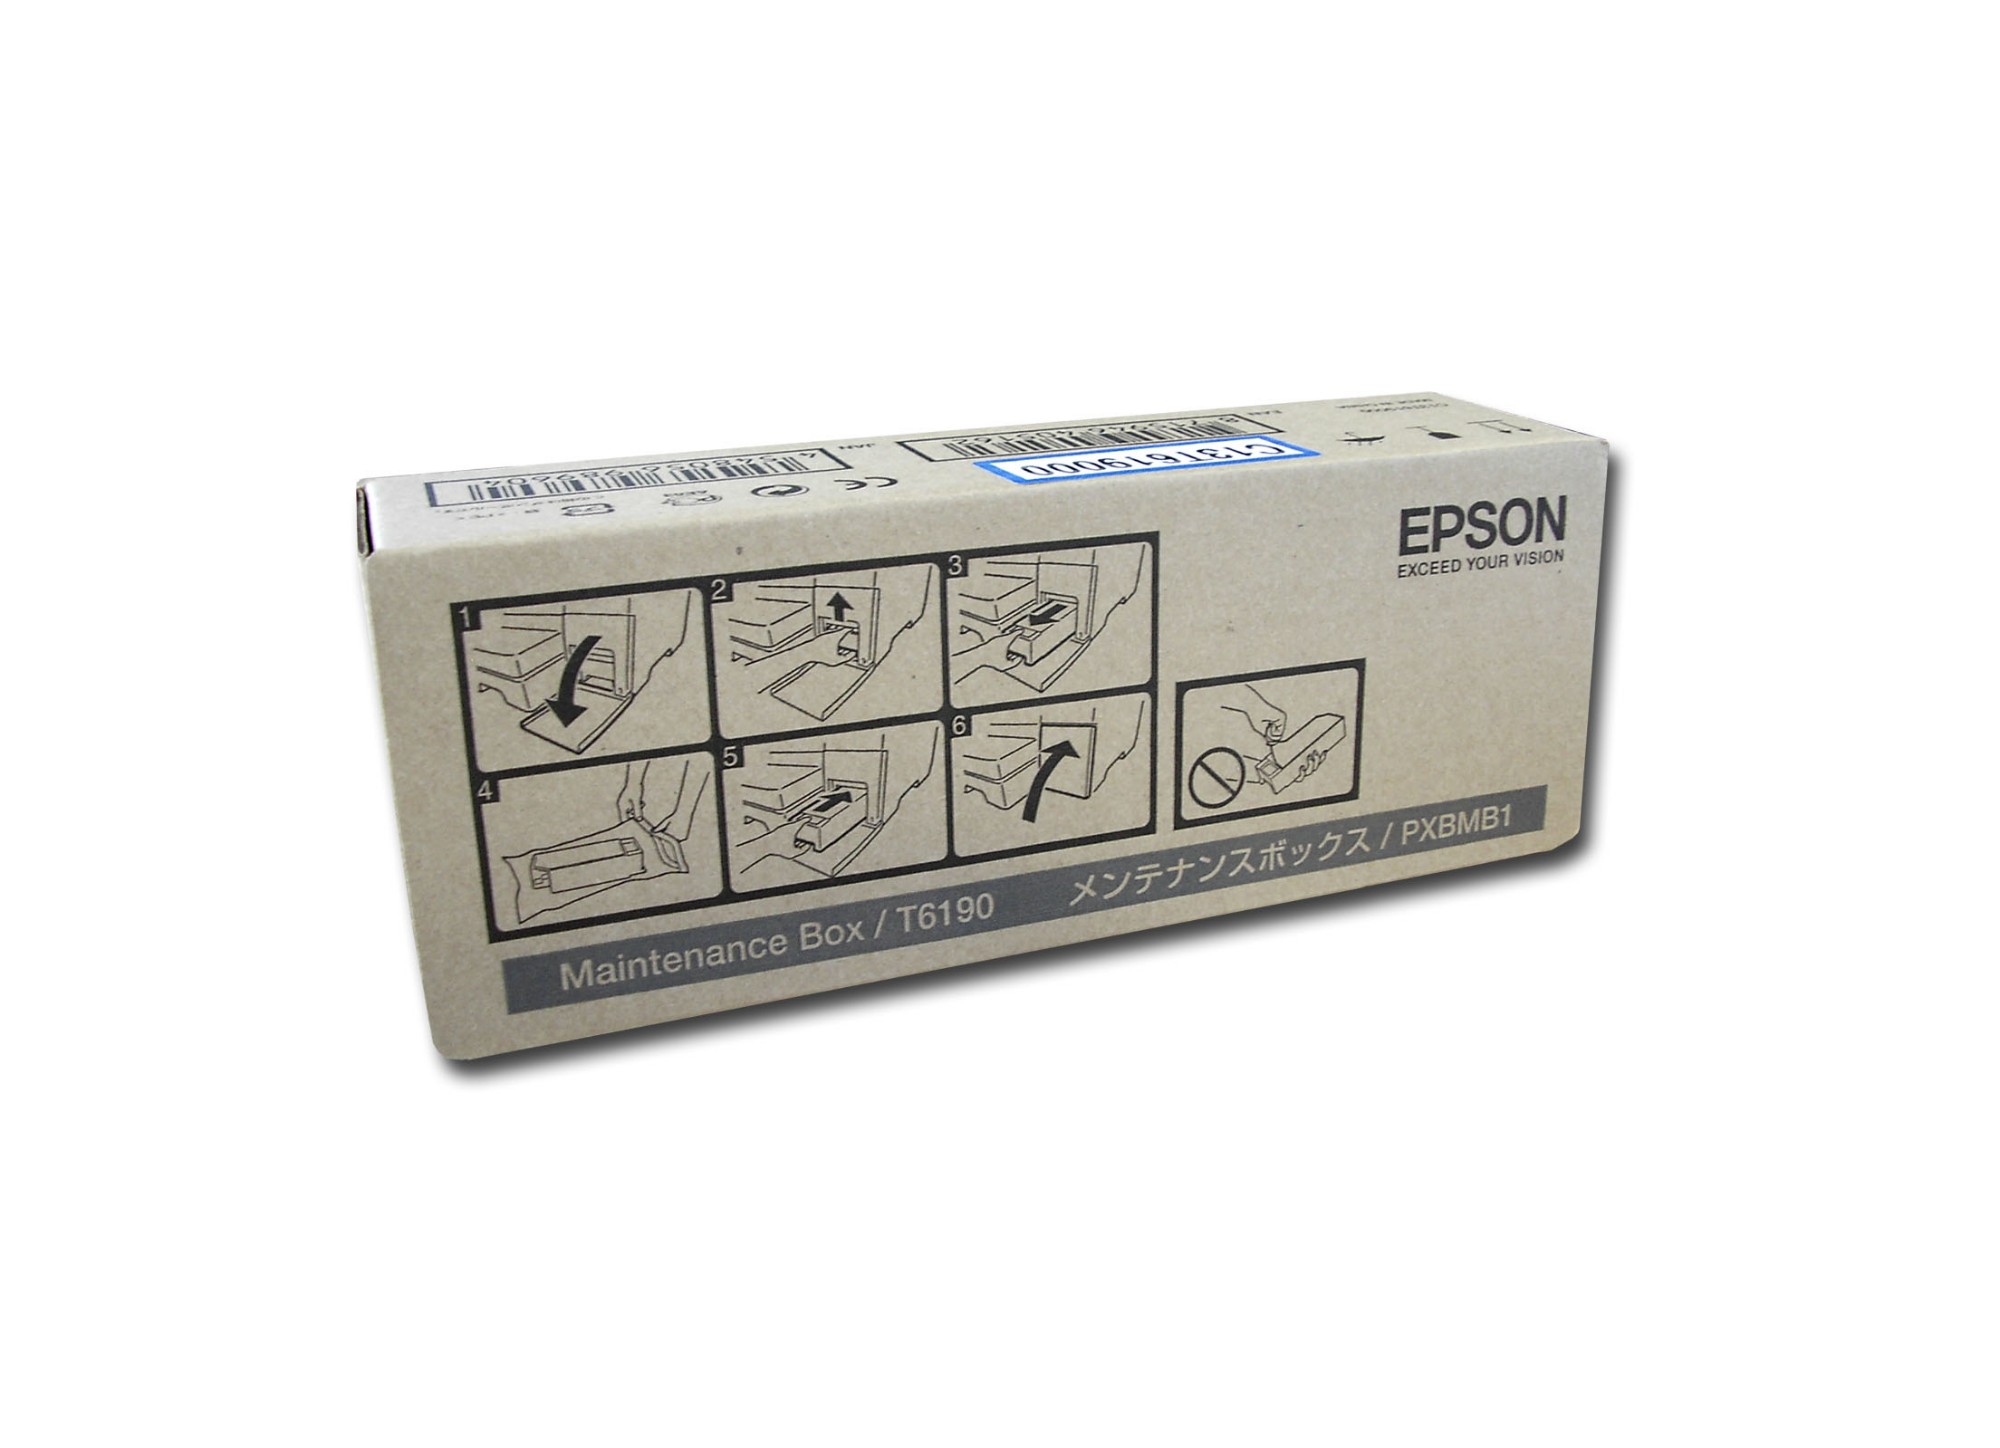 Epson C13T619000/T6190 Cleaning cartridge, 35K pages for Epson B 300/500/Stylus Pro 4900/SureColor SC-P 5000/SureColor SC-P 5000 V